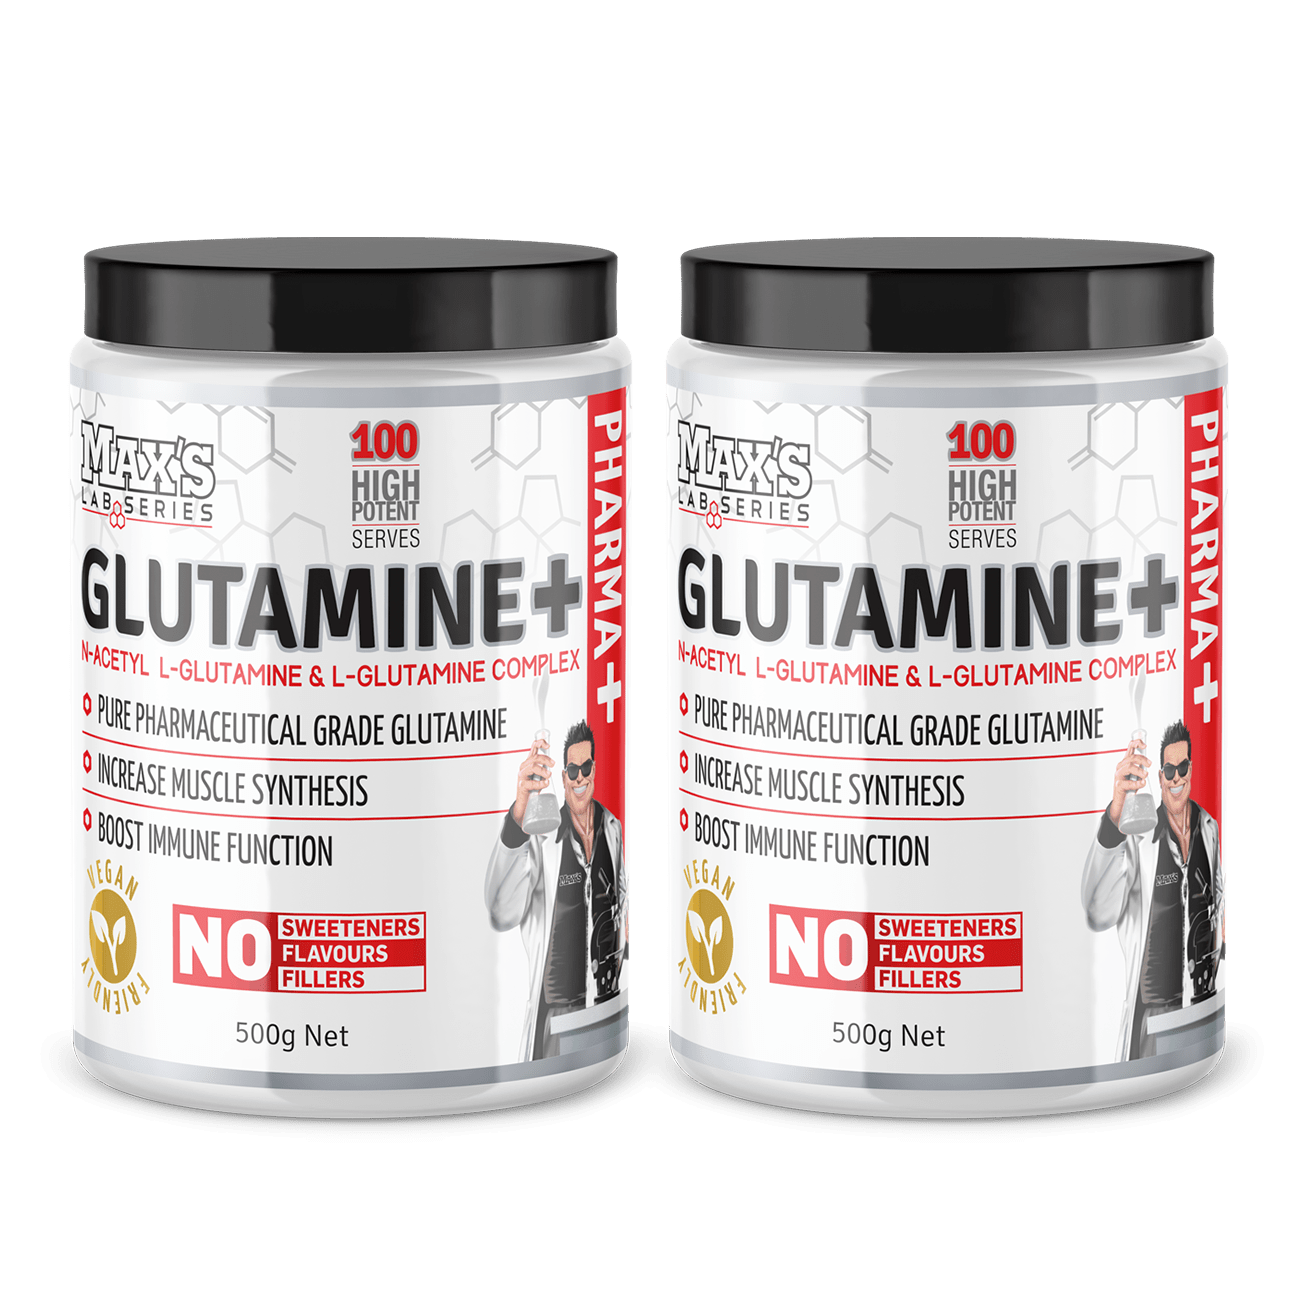 Twin Pack: Glutamine+